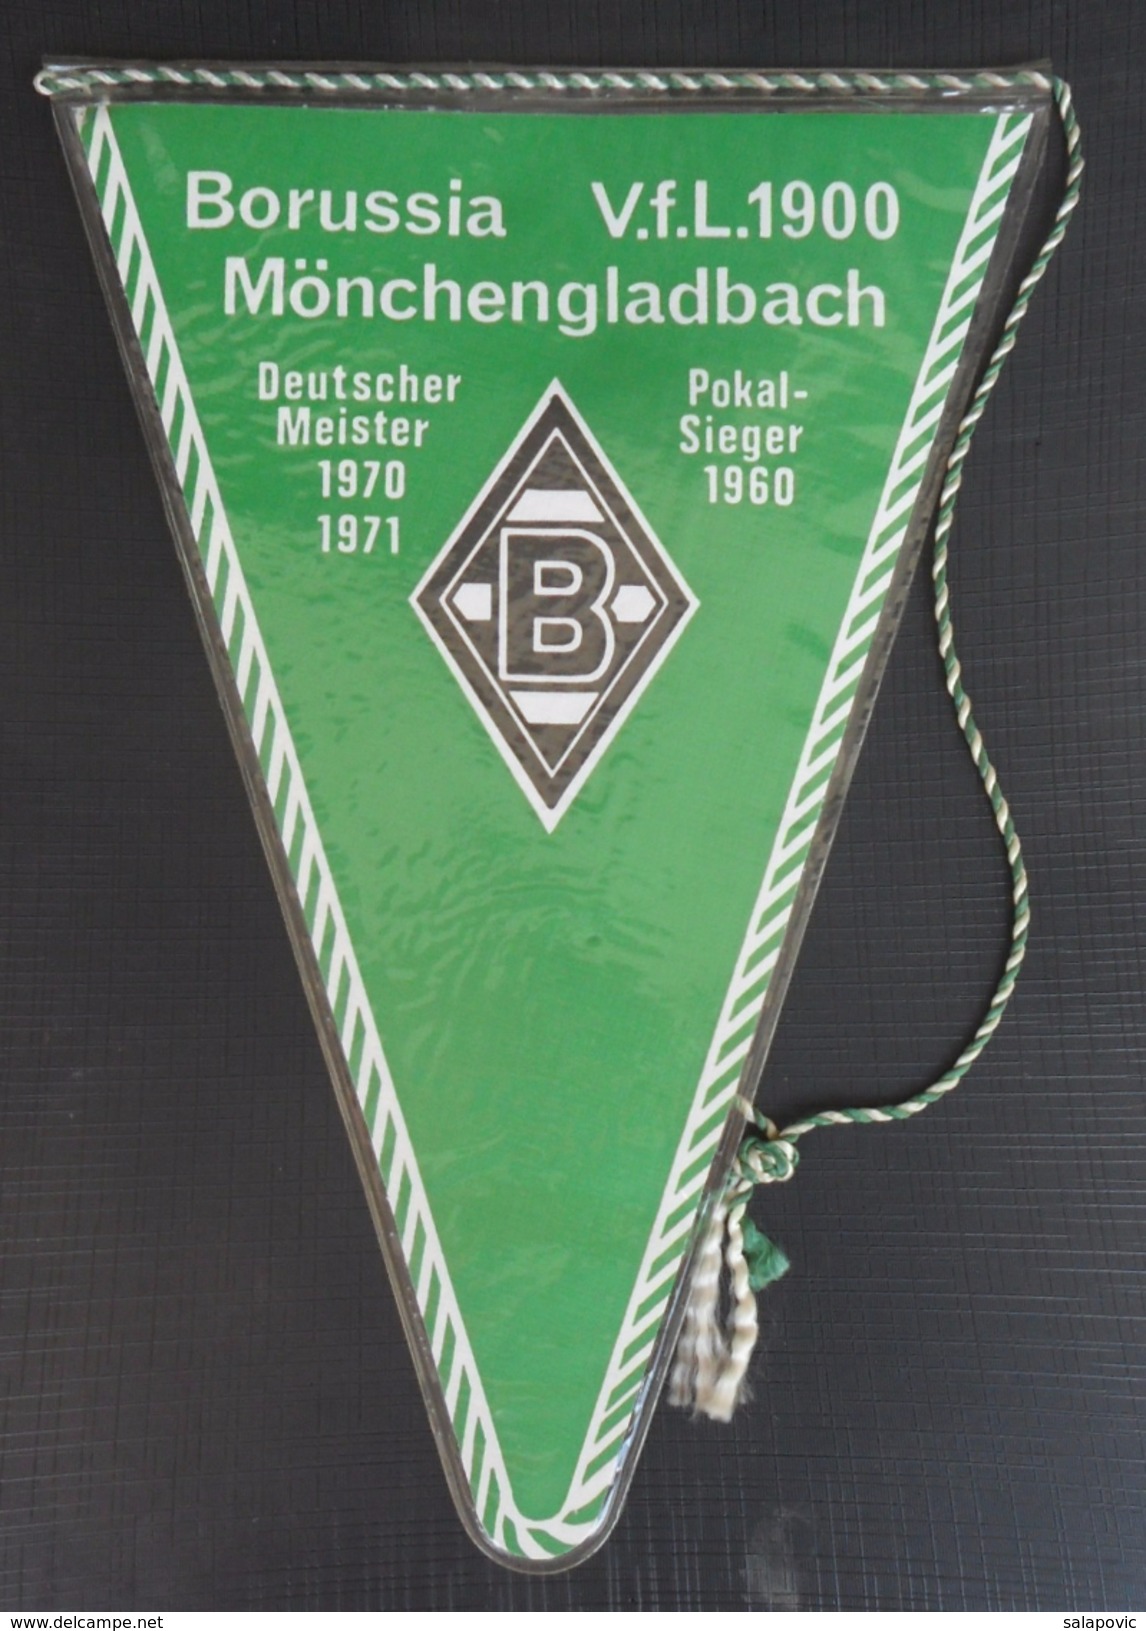 Borussia Mönchengladbach GERMANY  FOOTBALL CLUB, SOCCER / FUTBOL / CALCIO, OLD PENNANT, SPORTS FLAG - Apparel, Souvenirs & Other